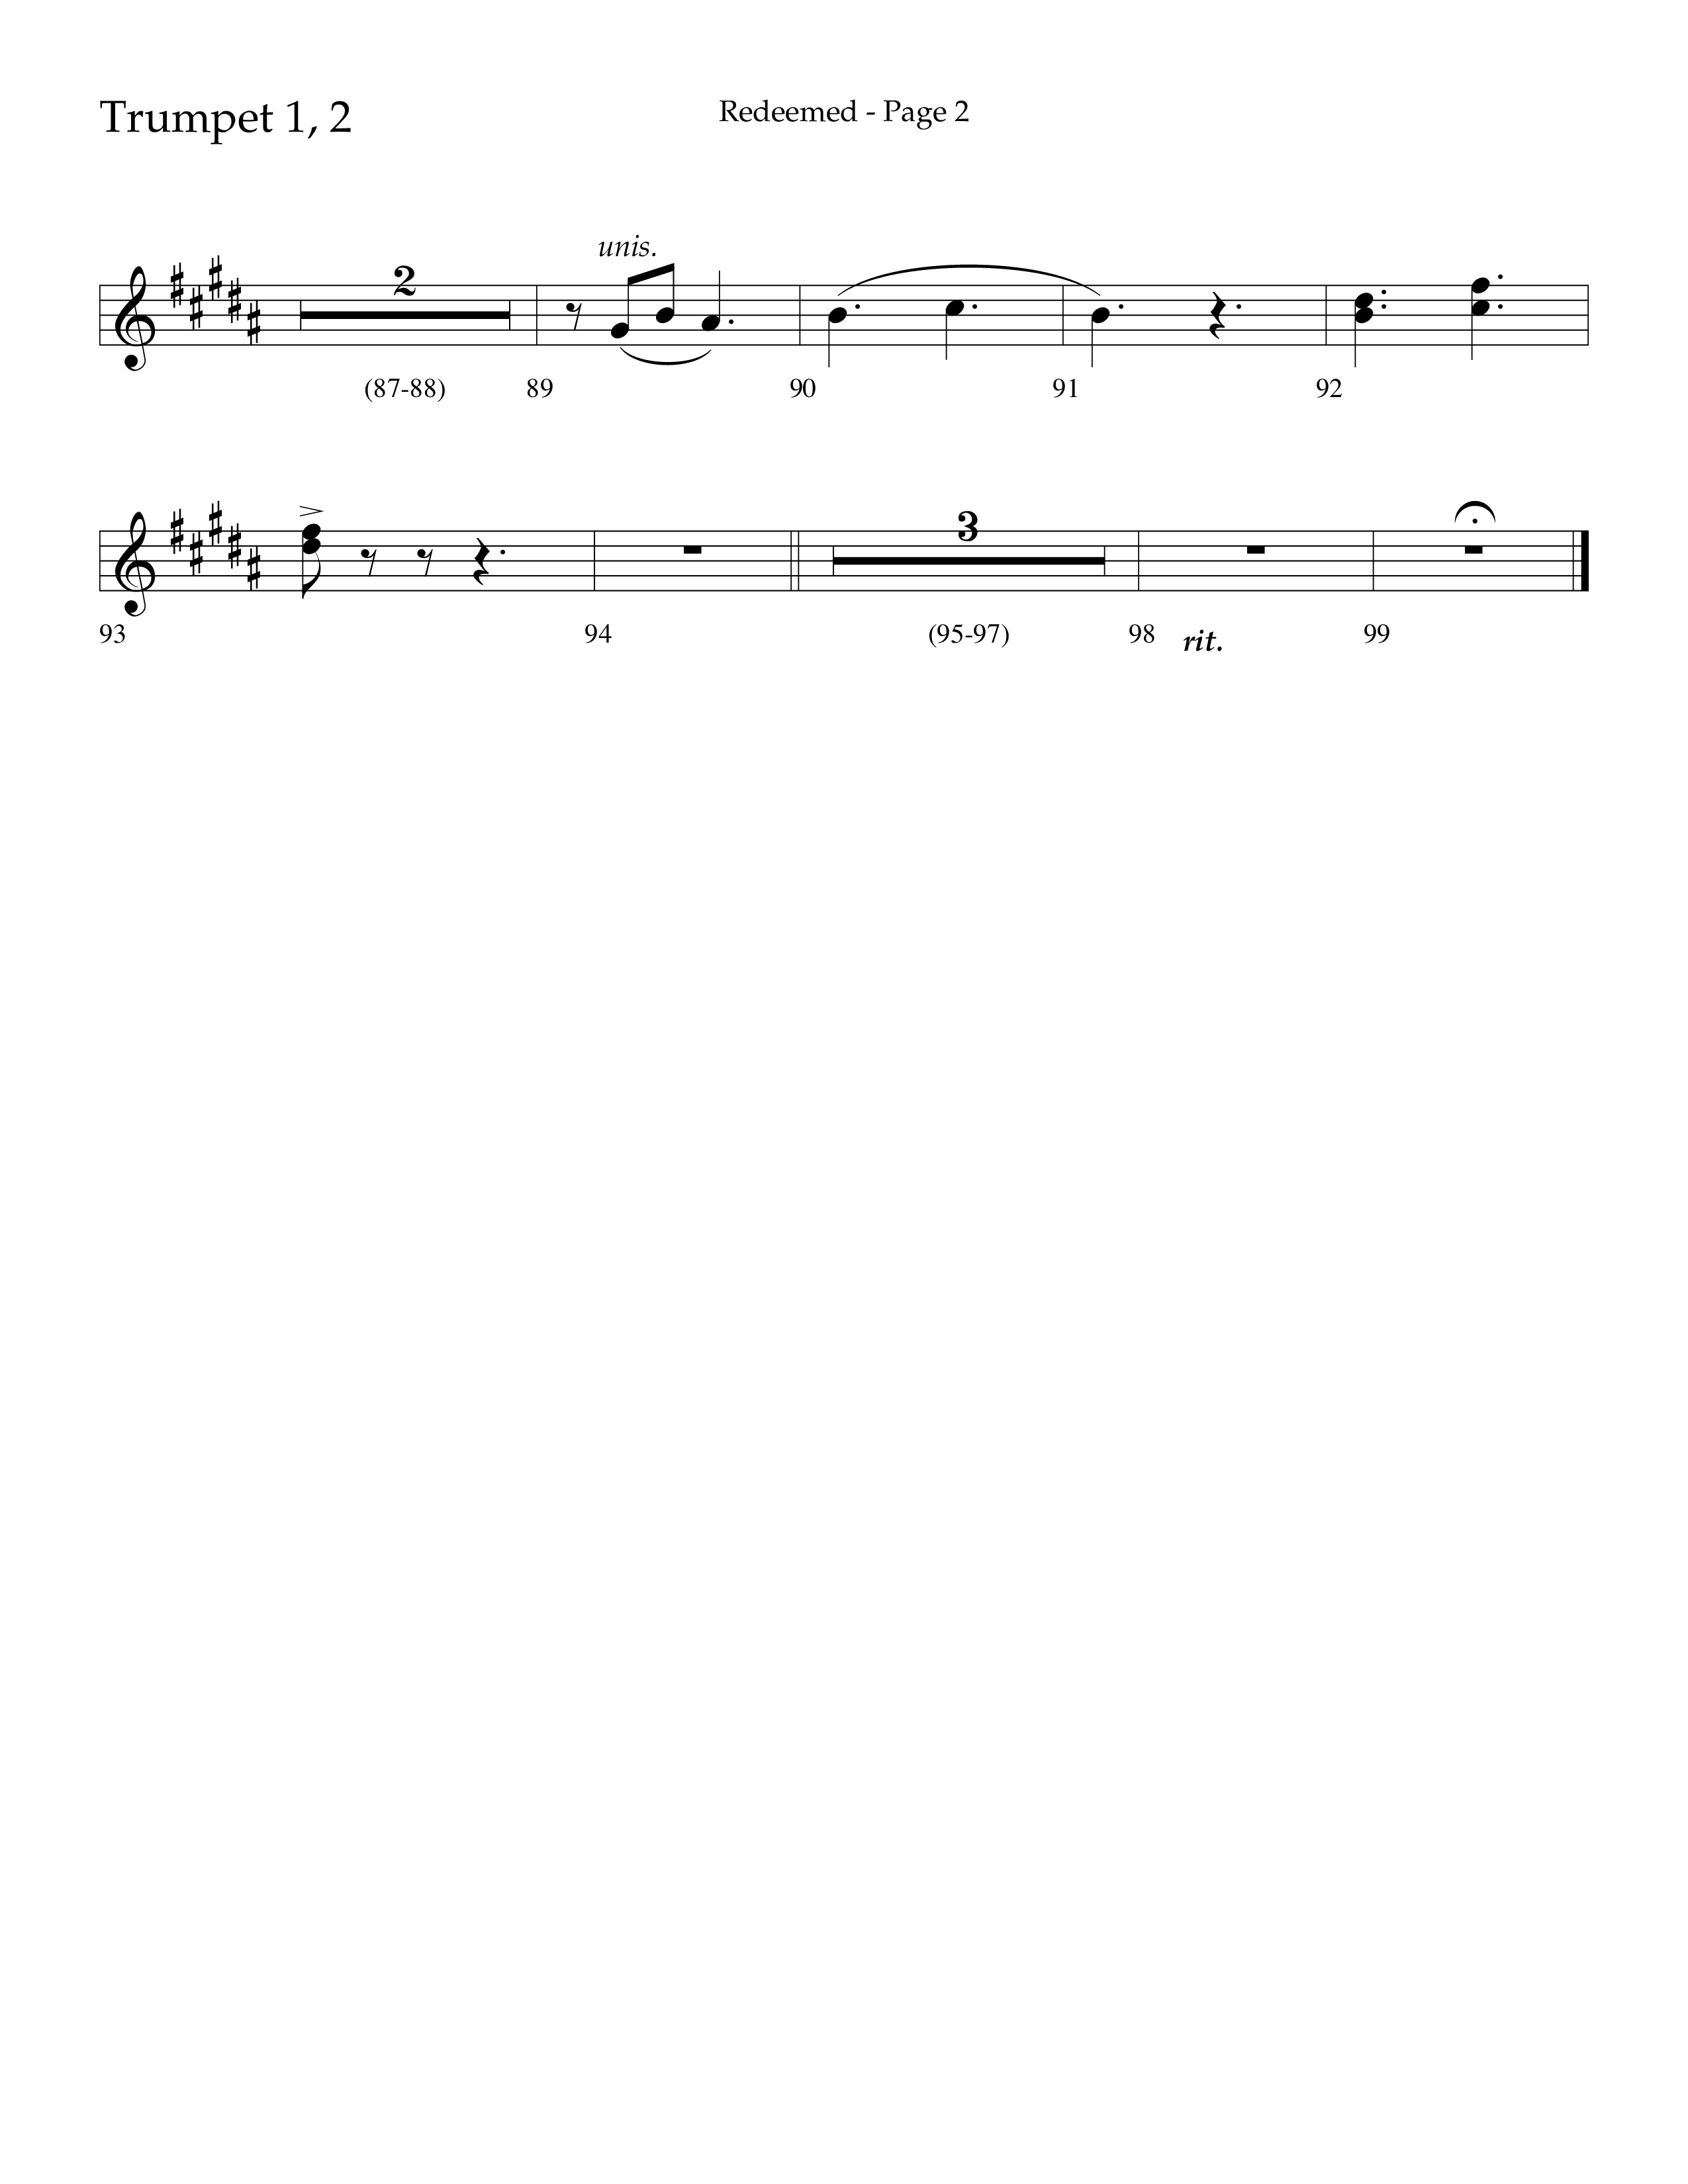 Redeemed (Choral Anthem SATB) Trumpet 1,2 (Lifeway Choral / Arr. Danny Zaloudik)